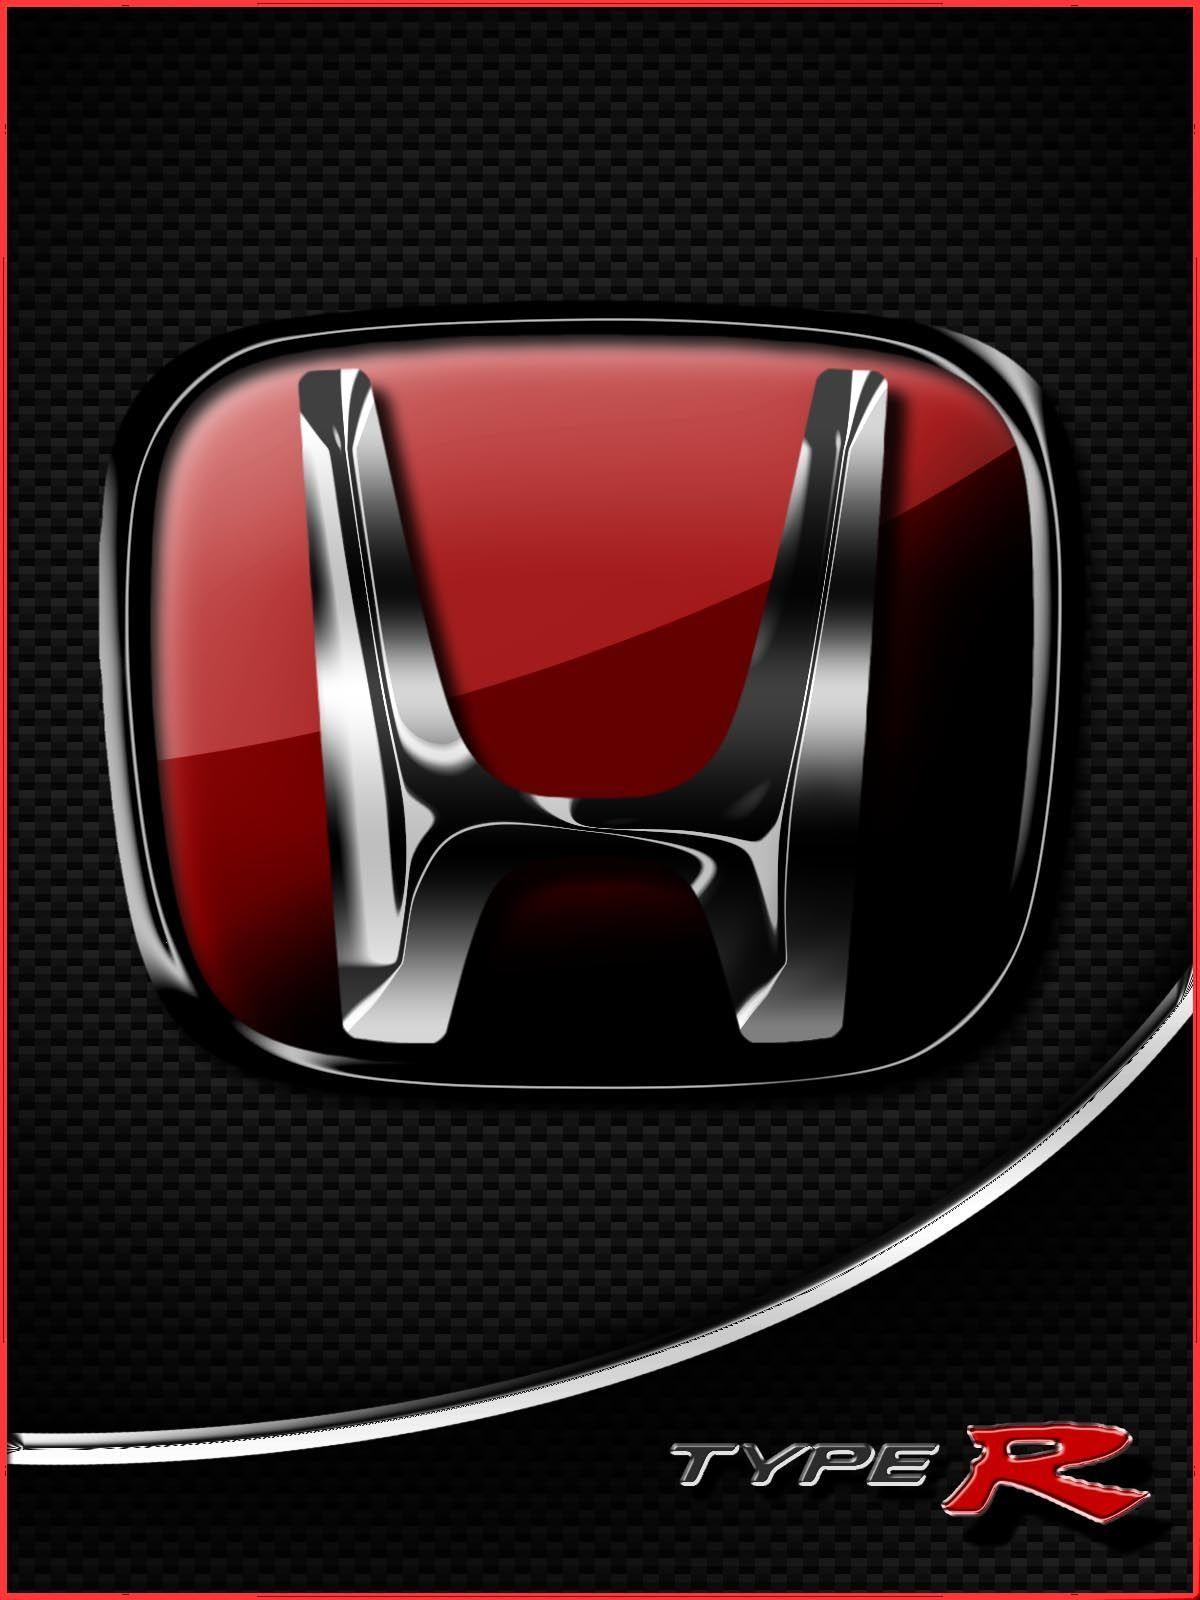 Honda Logo 14. Honda. Honda, Logos and Cars